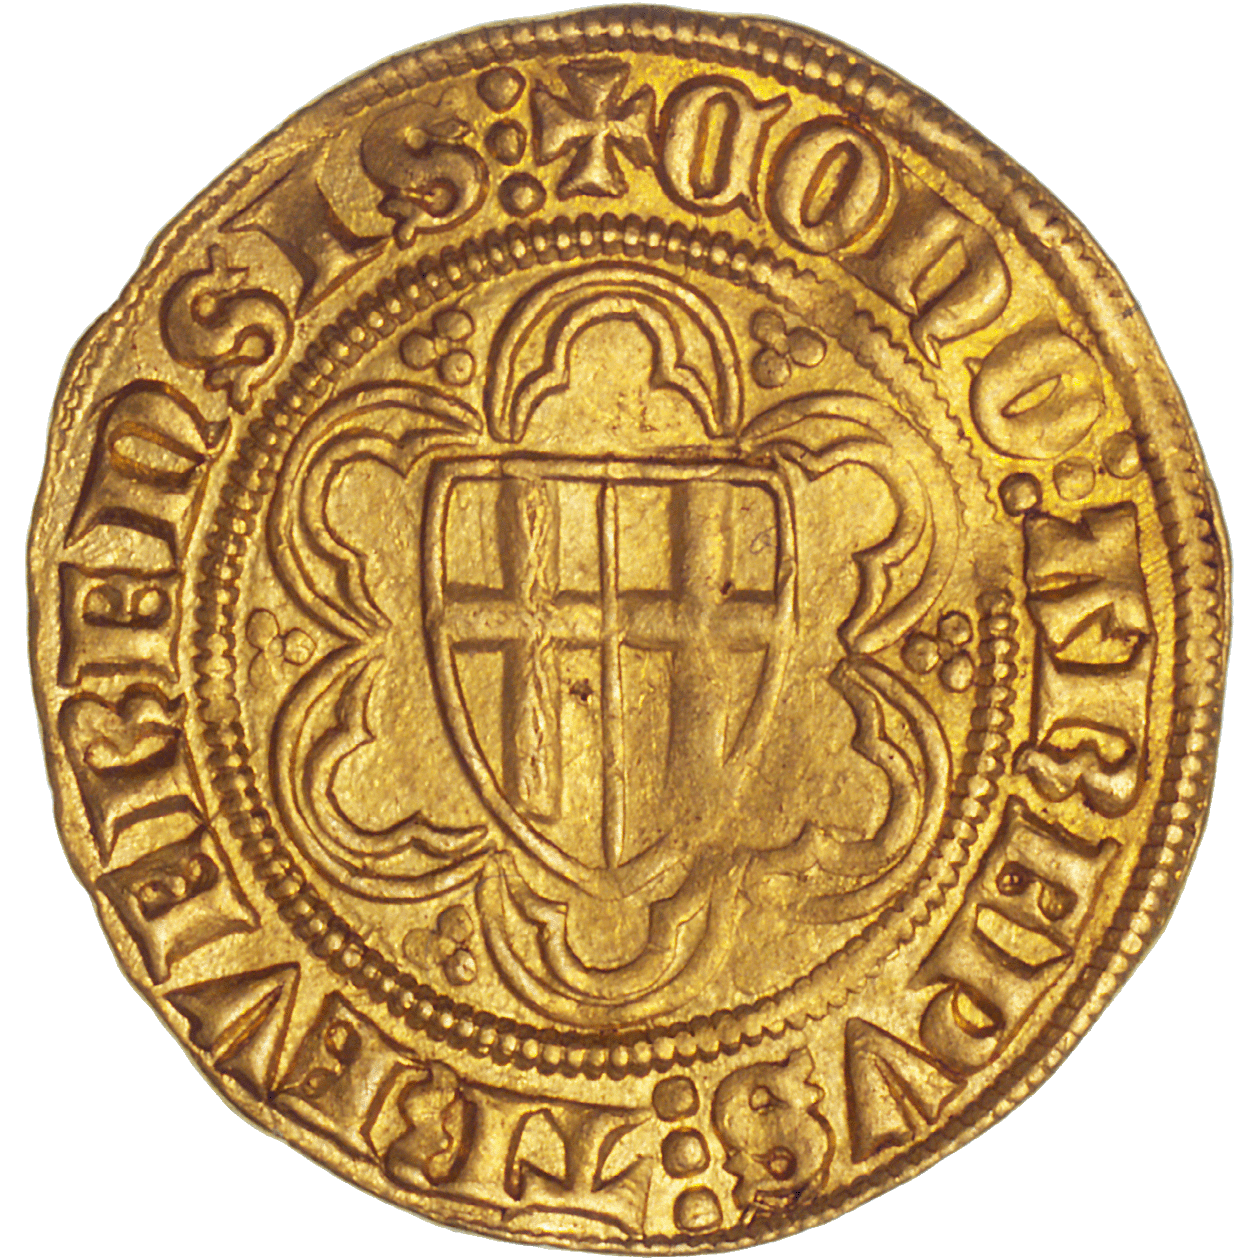 Holy Roman Empire, Bishopric of Treves, Kuno II of Falkenstein at Minzenberg, Goldgulden (obverse)